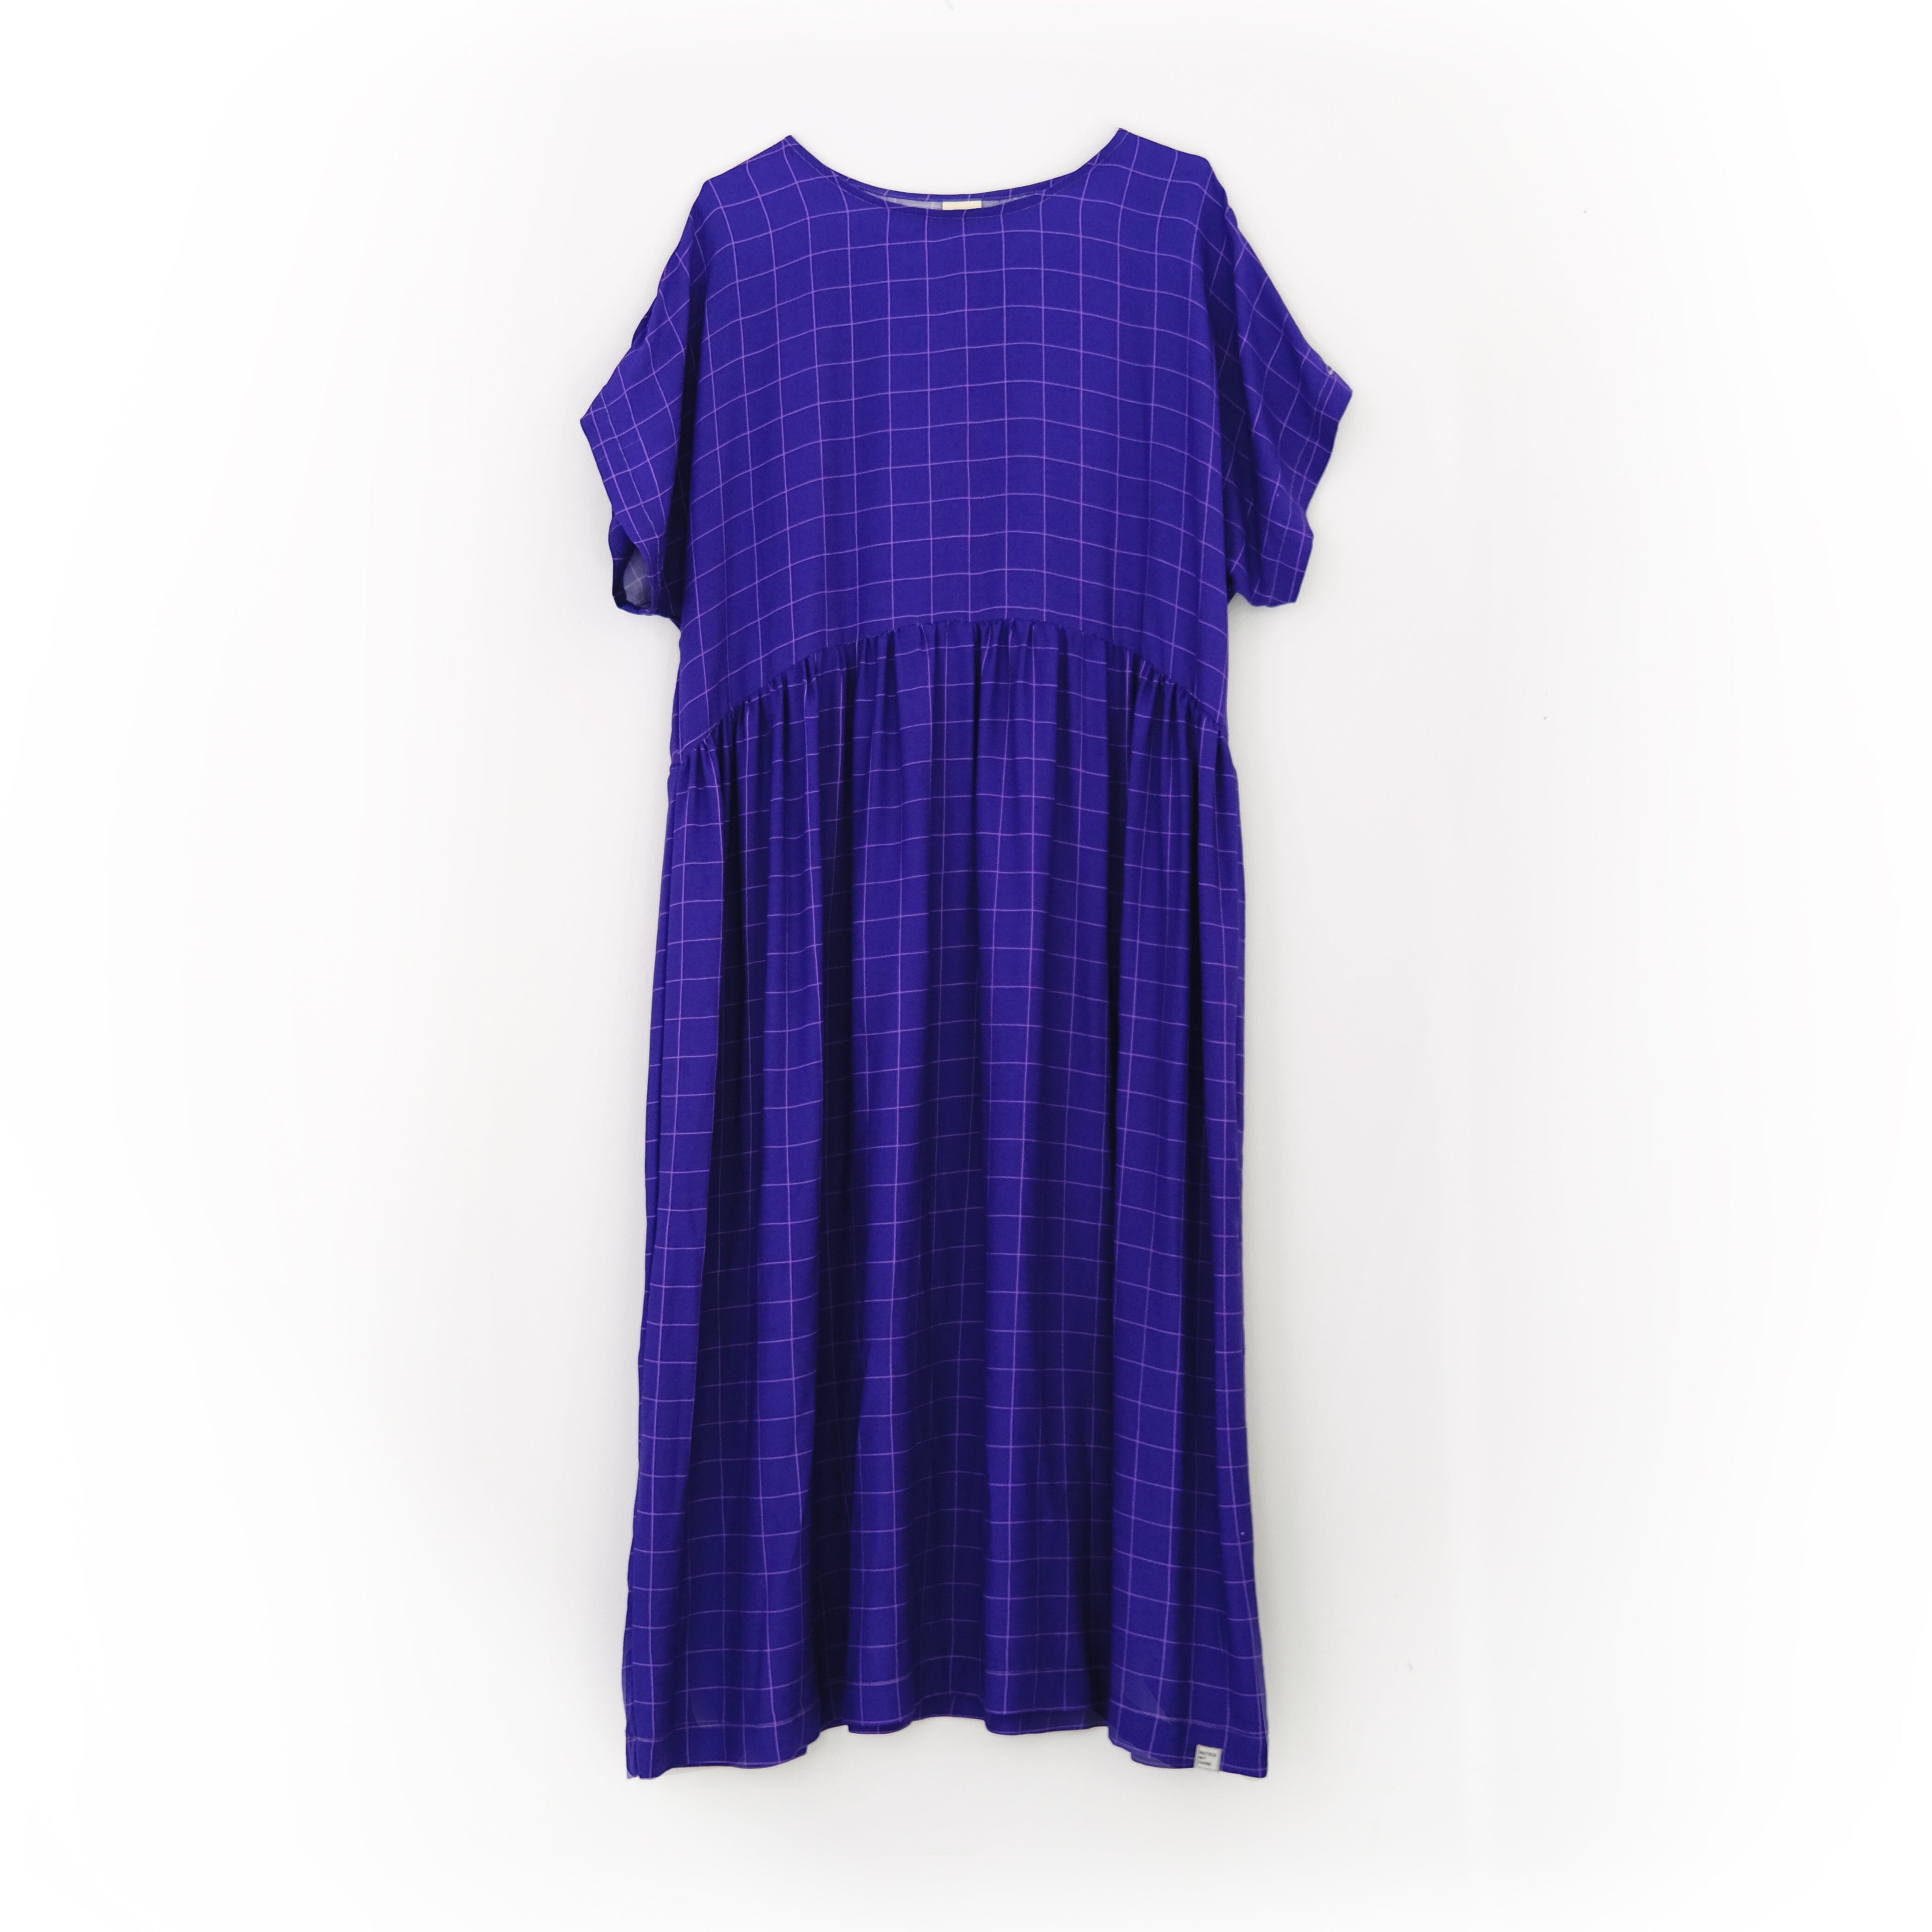 PRE-ORDER: Oversize Kleid "Viskose Grid" Bekleidung & Accessoires Matsch mit Sahne Lapislazuli / Flieder 